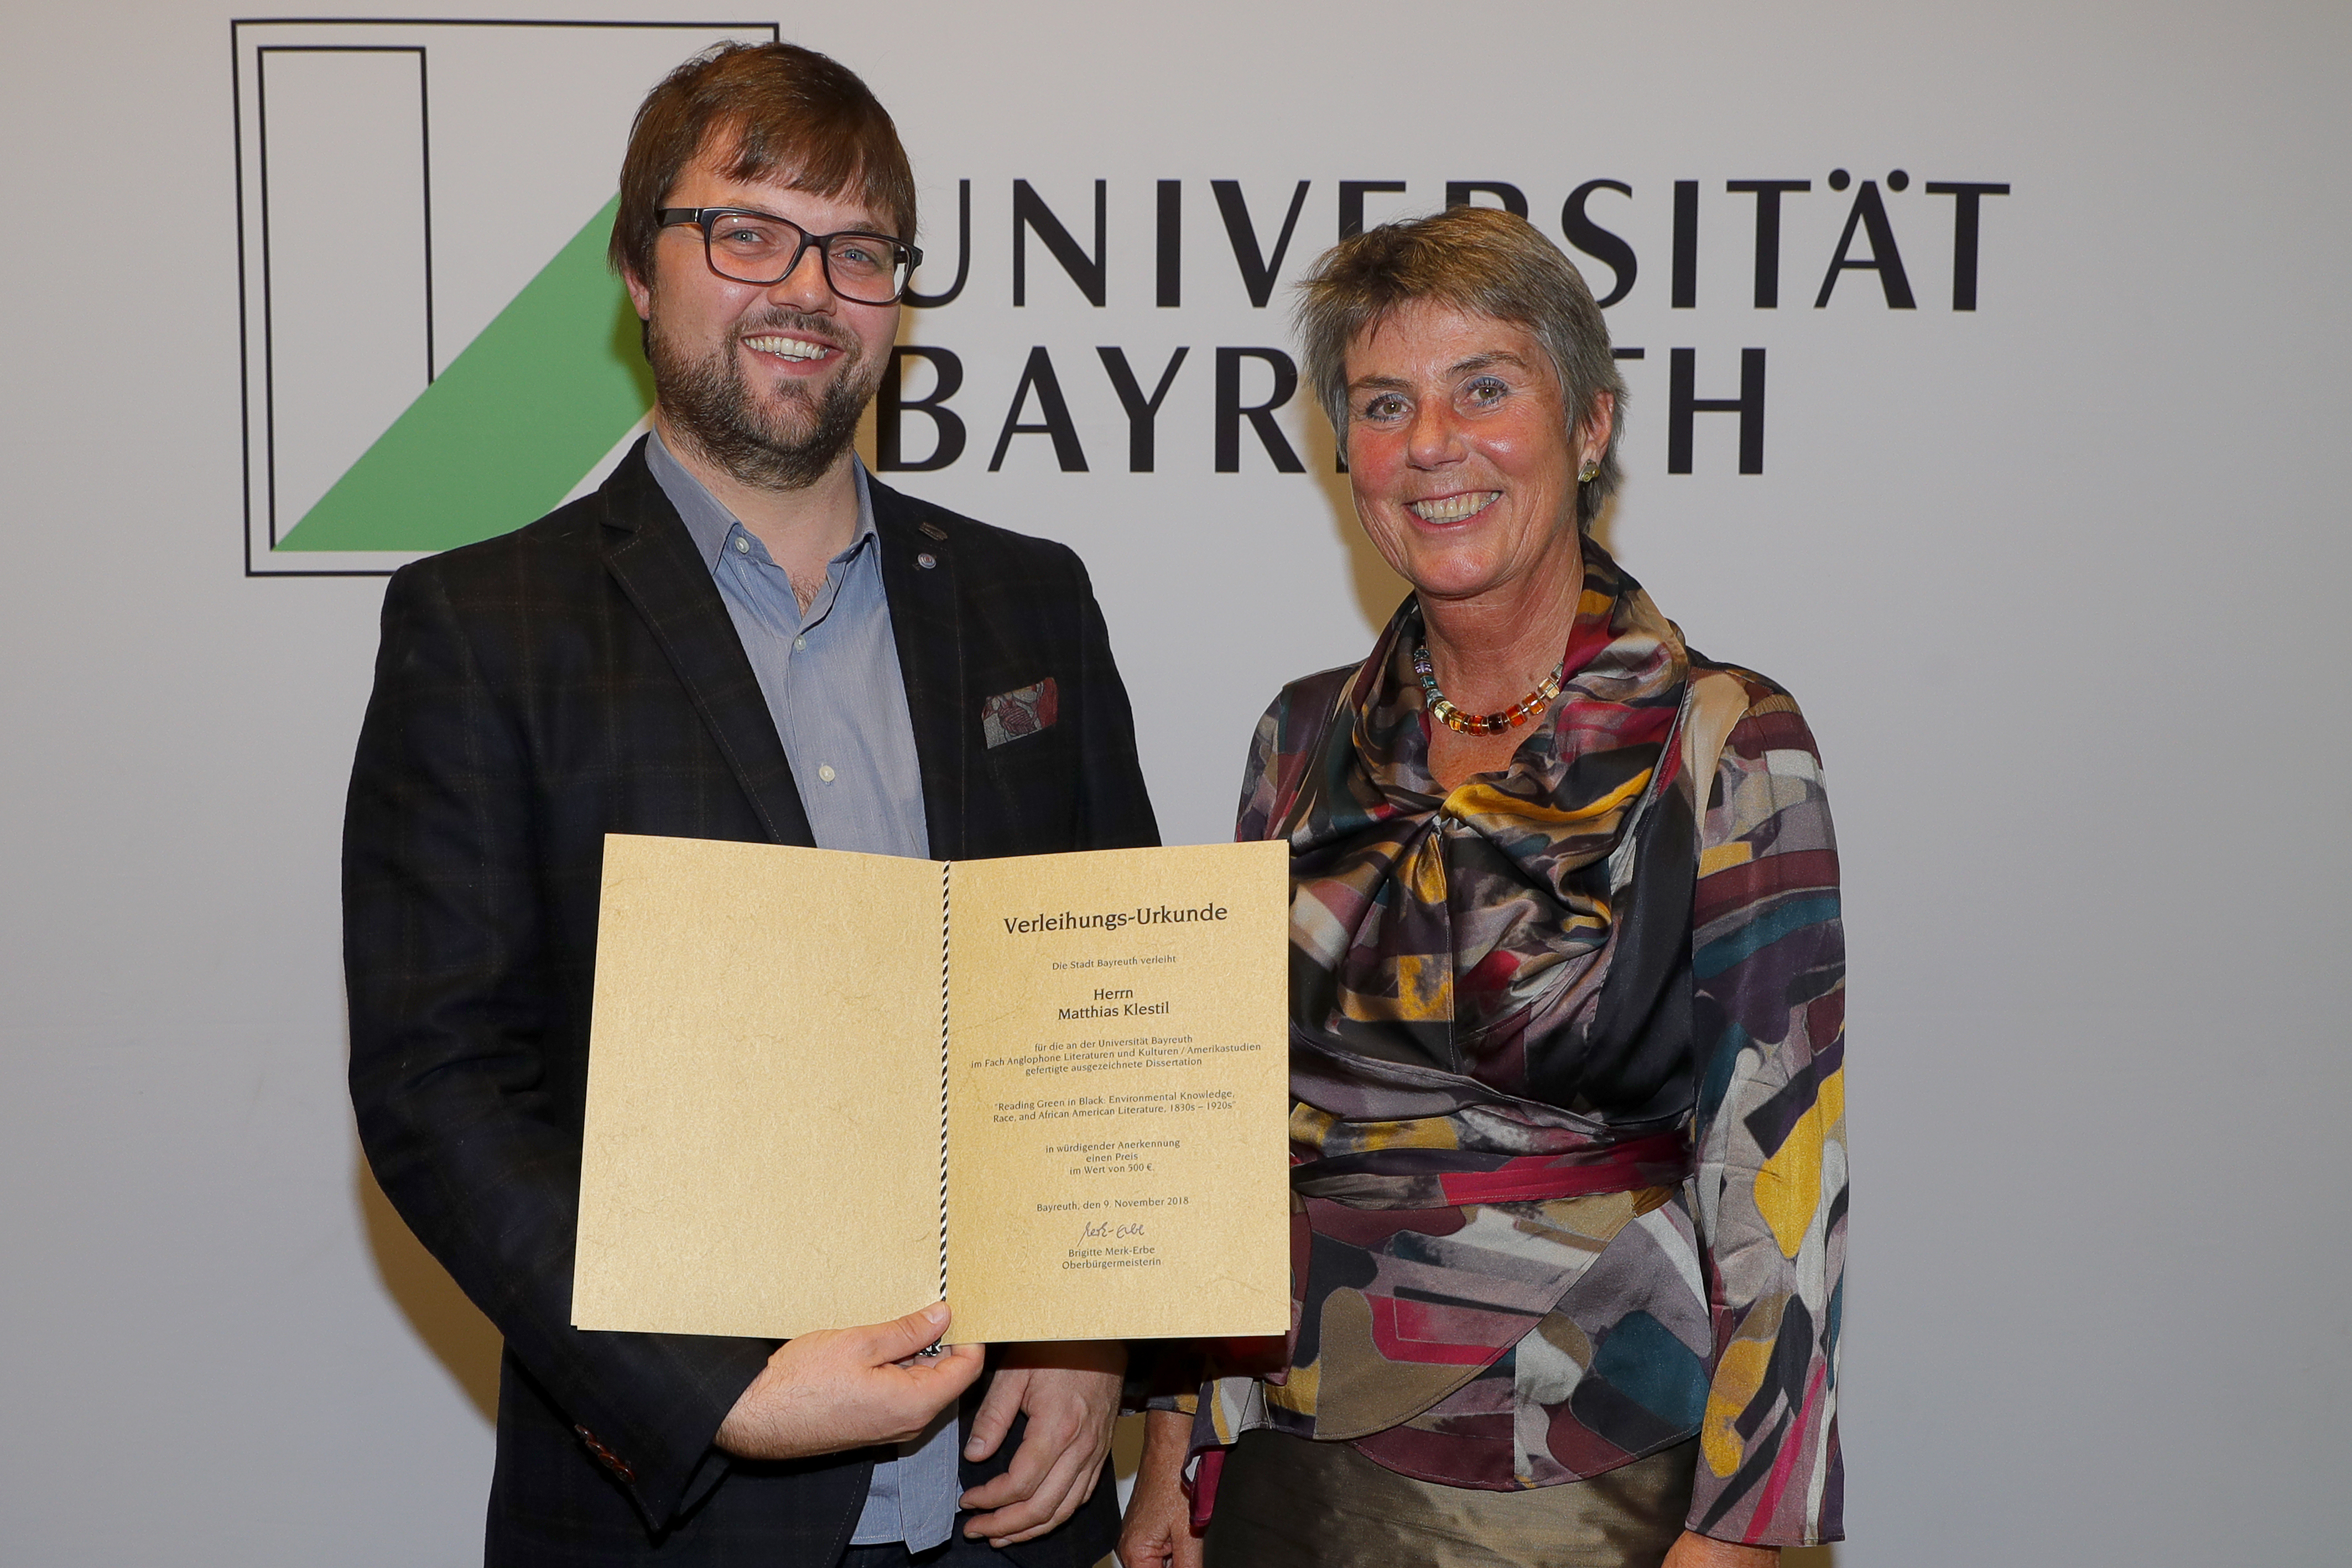 Verleihung des Preises der Stadt Bayreuth an Matthias Klestil durch Brigitte Merk-Erbe